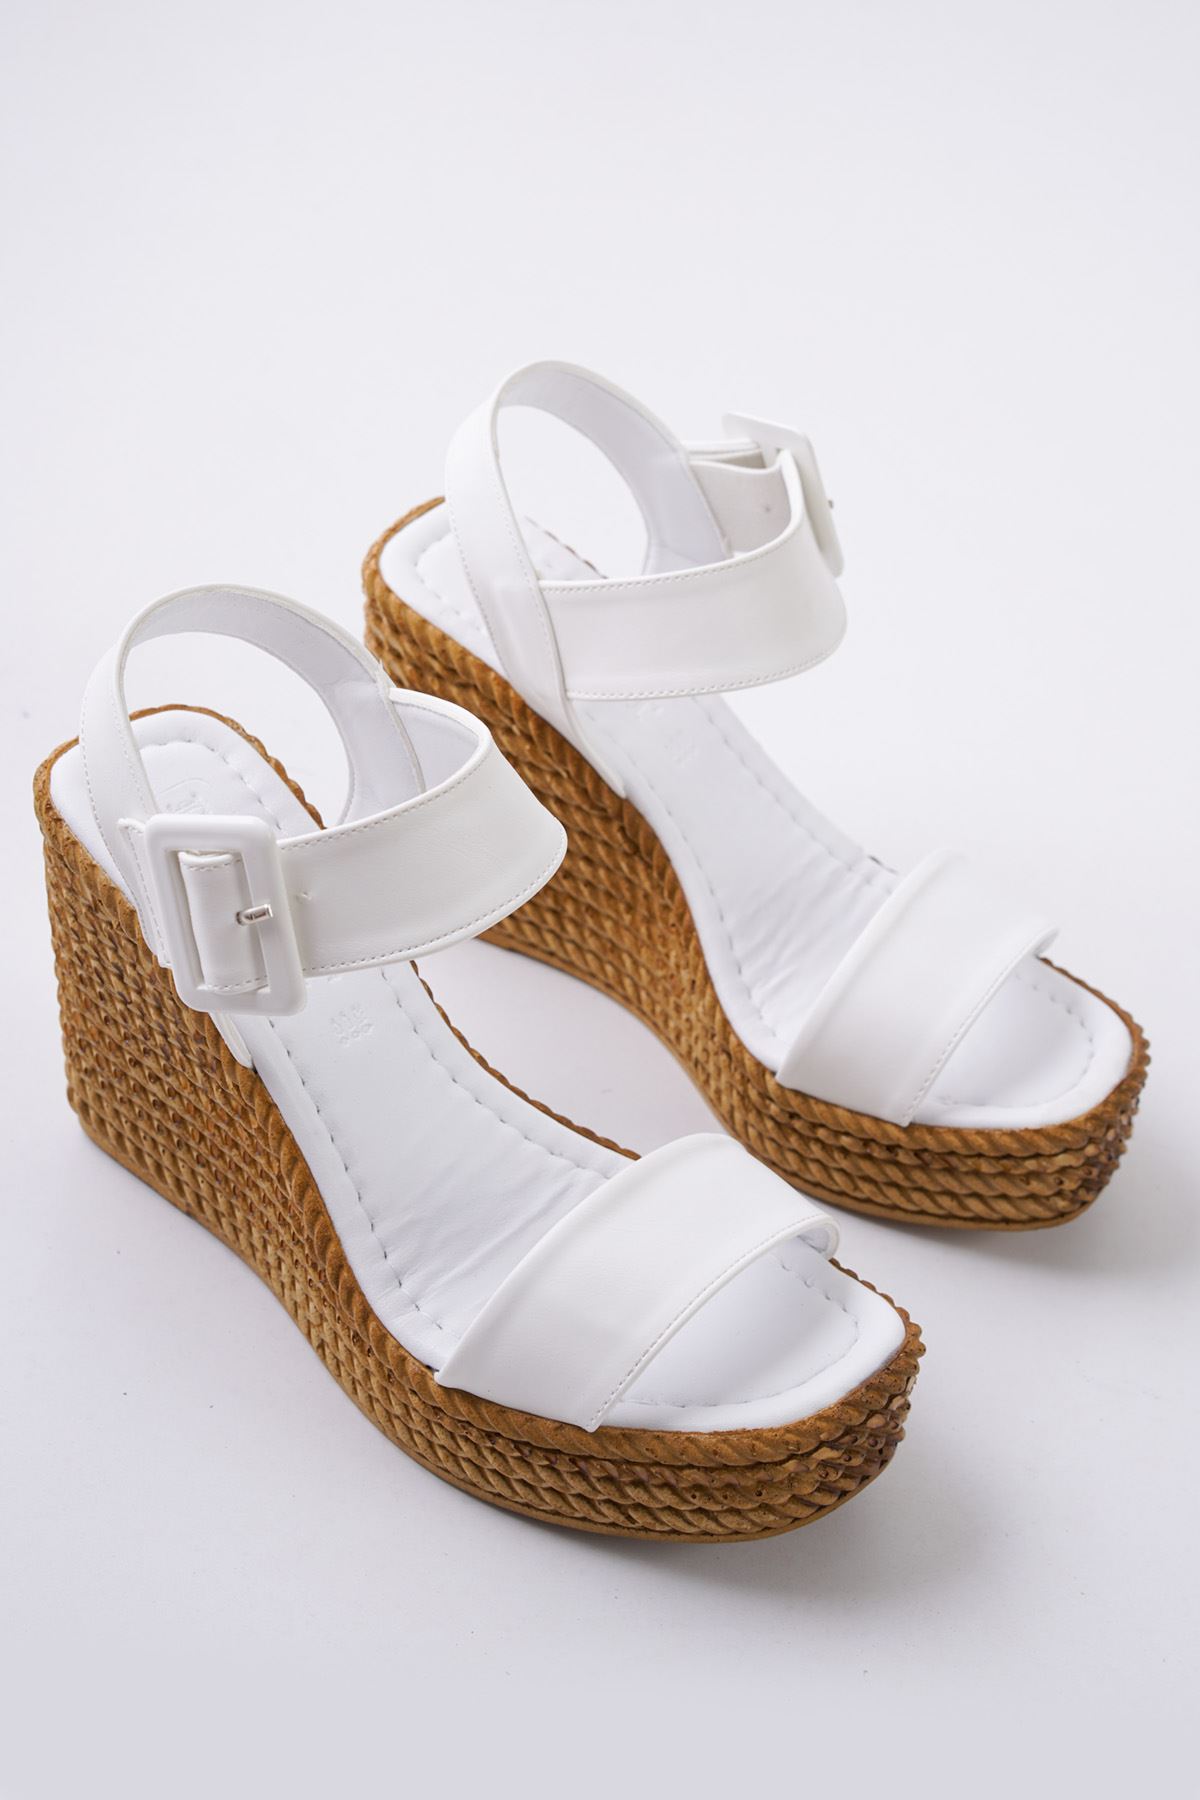 Hilda Beyaz Dolgu Topuklu Kadın Ayakkabı